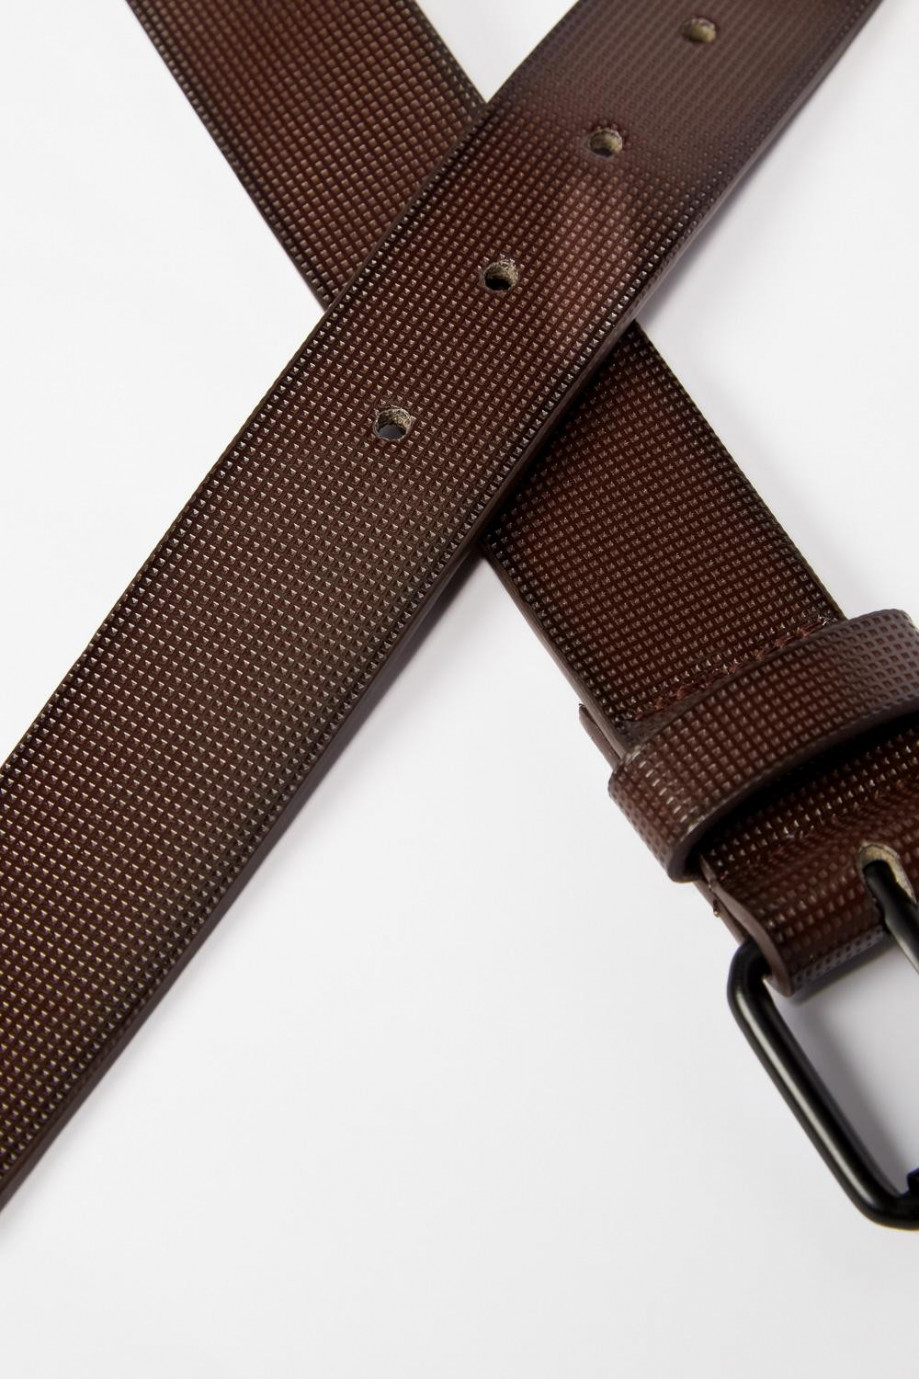 Cinturón café oscuro con textura de puntos y hebilla cuadrada